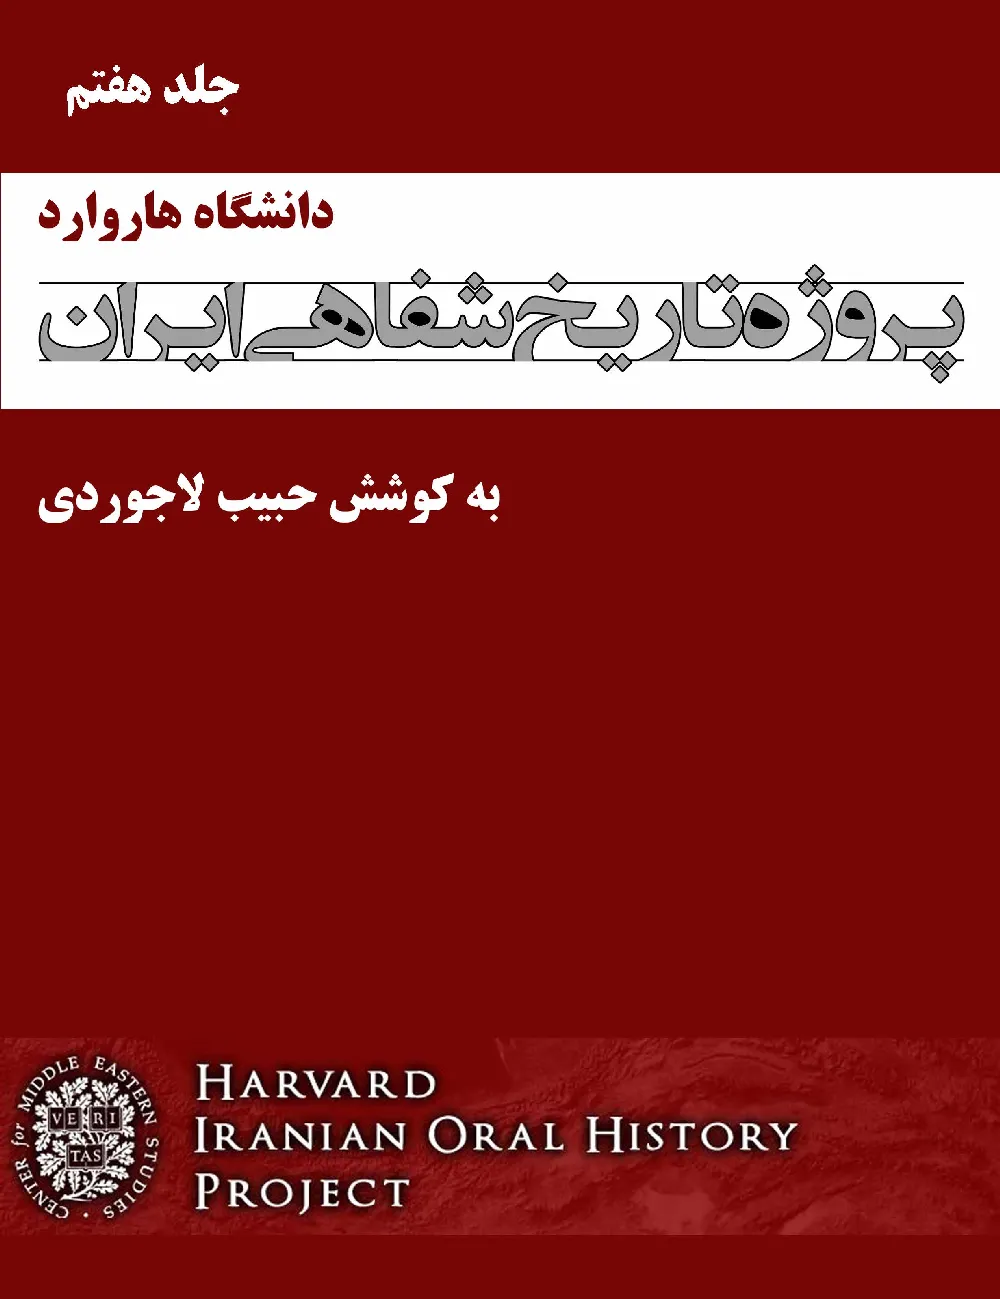 پروژه تاریخ شفاهی ایران، دانشگاه هاروارد – جلد 7